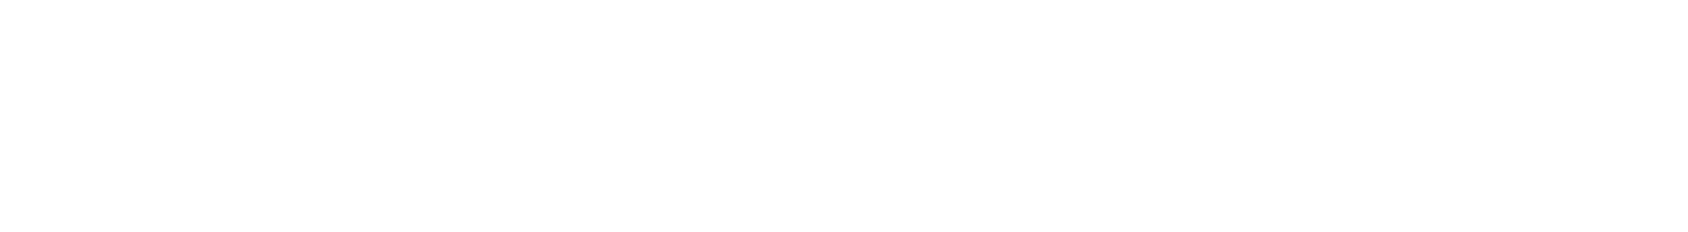 open-network-logo